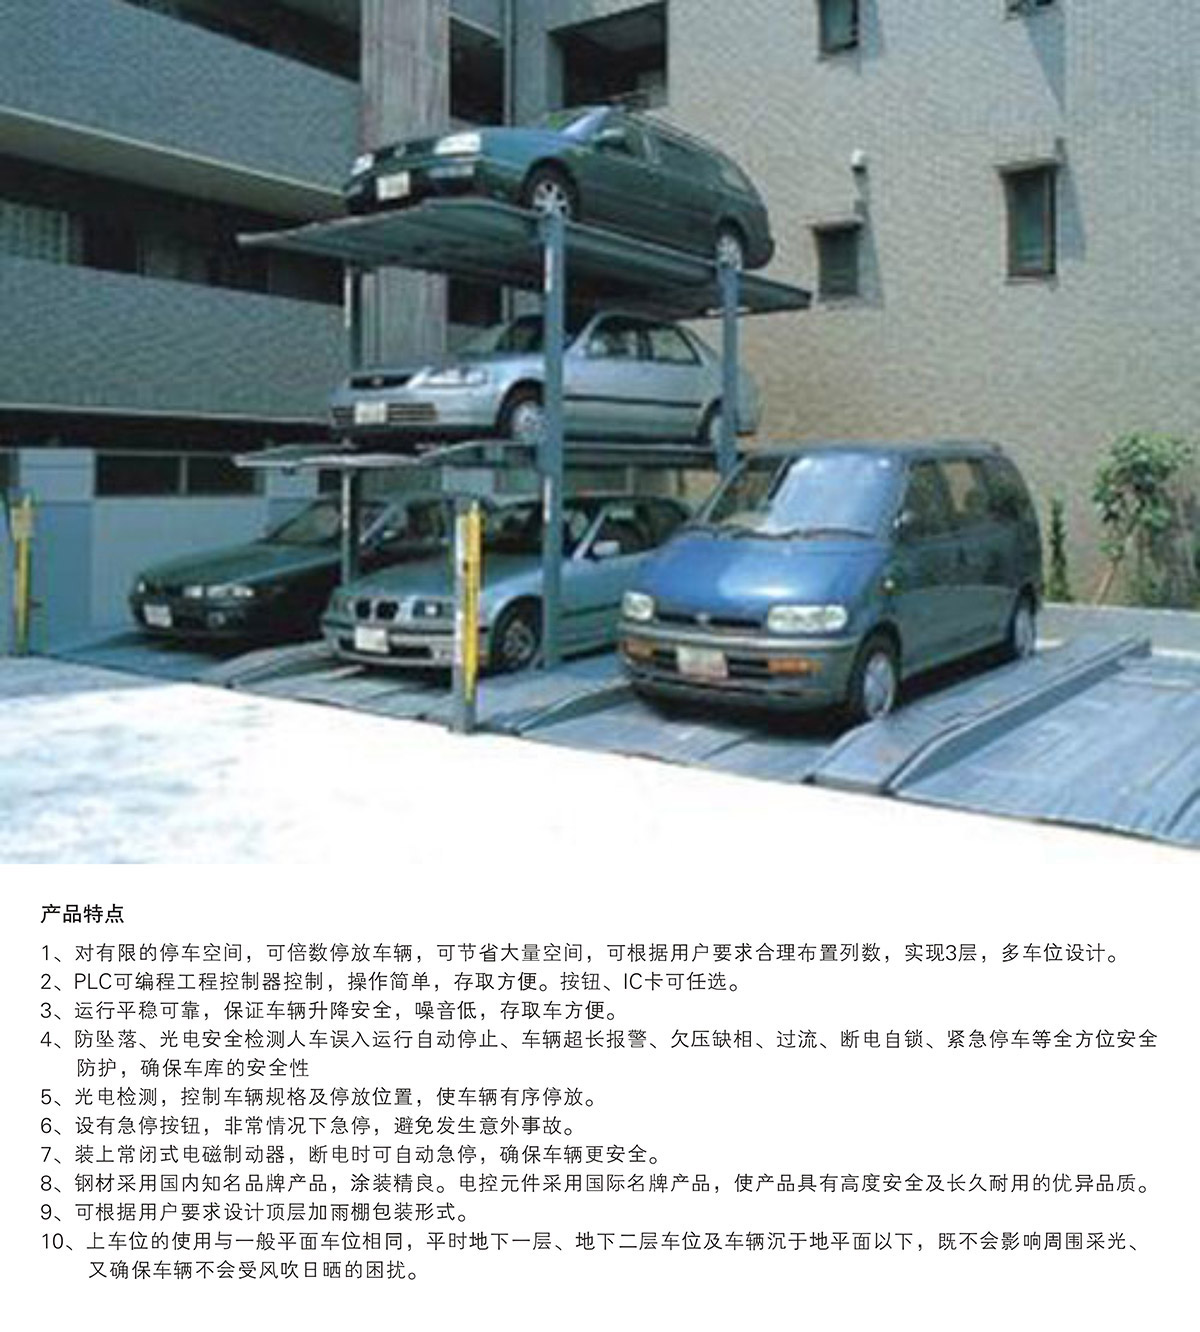 机械停车设备PJS3D2三层地坑简易升降立体停车产品特点.jpg